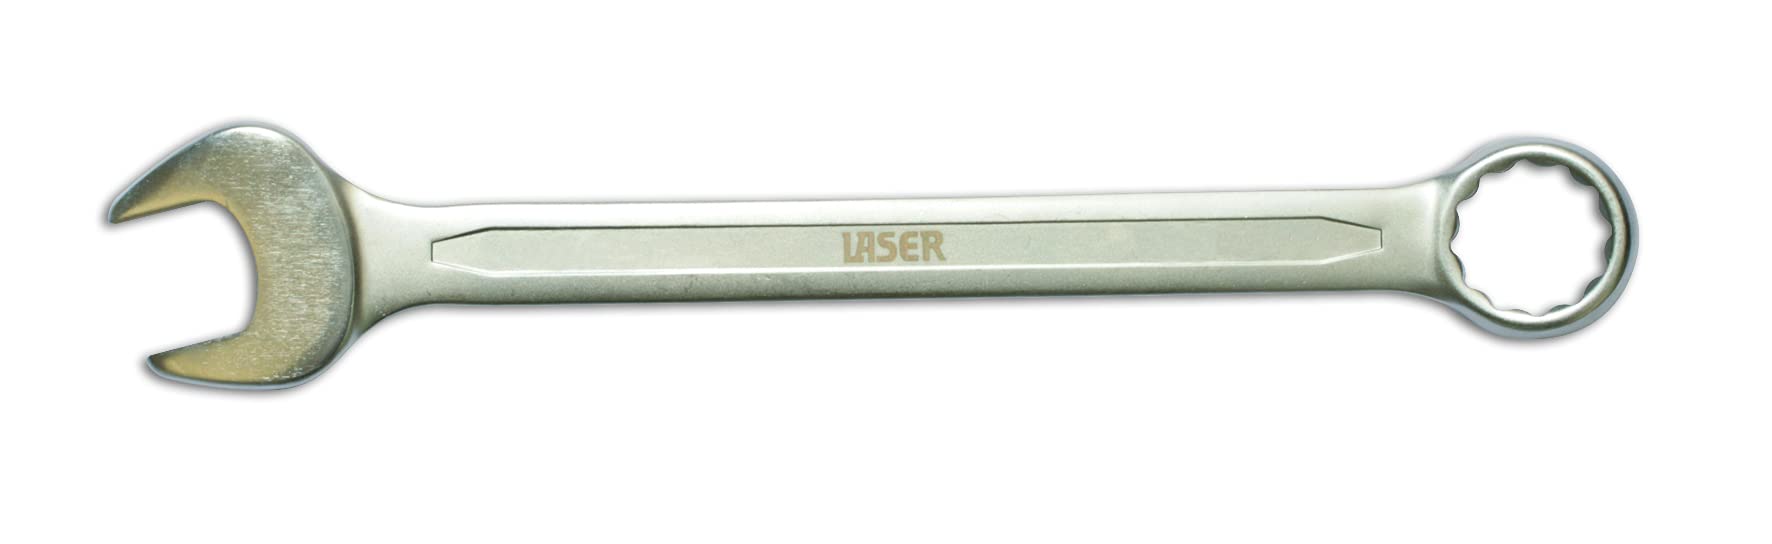 Laser 3064 3064 Kombinationsschlüssel - 16 mm von Laser